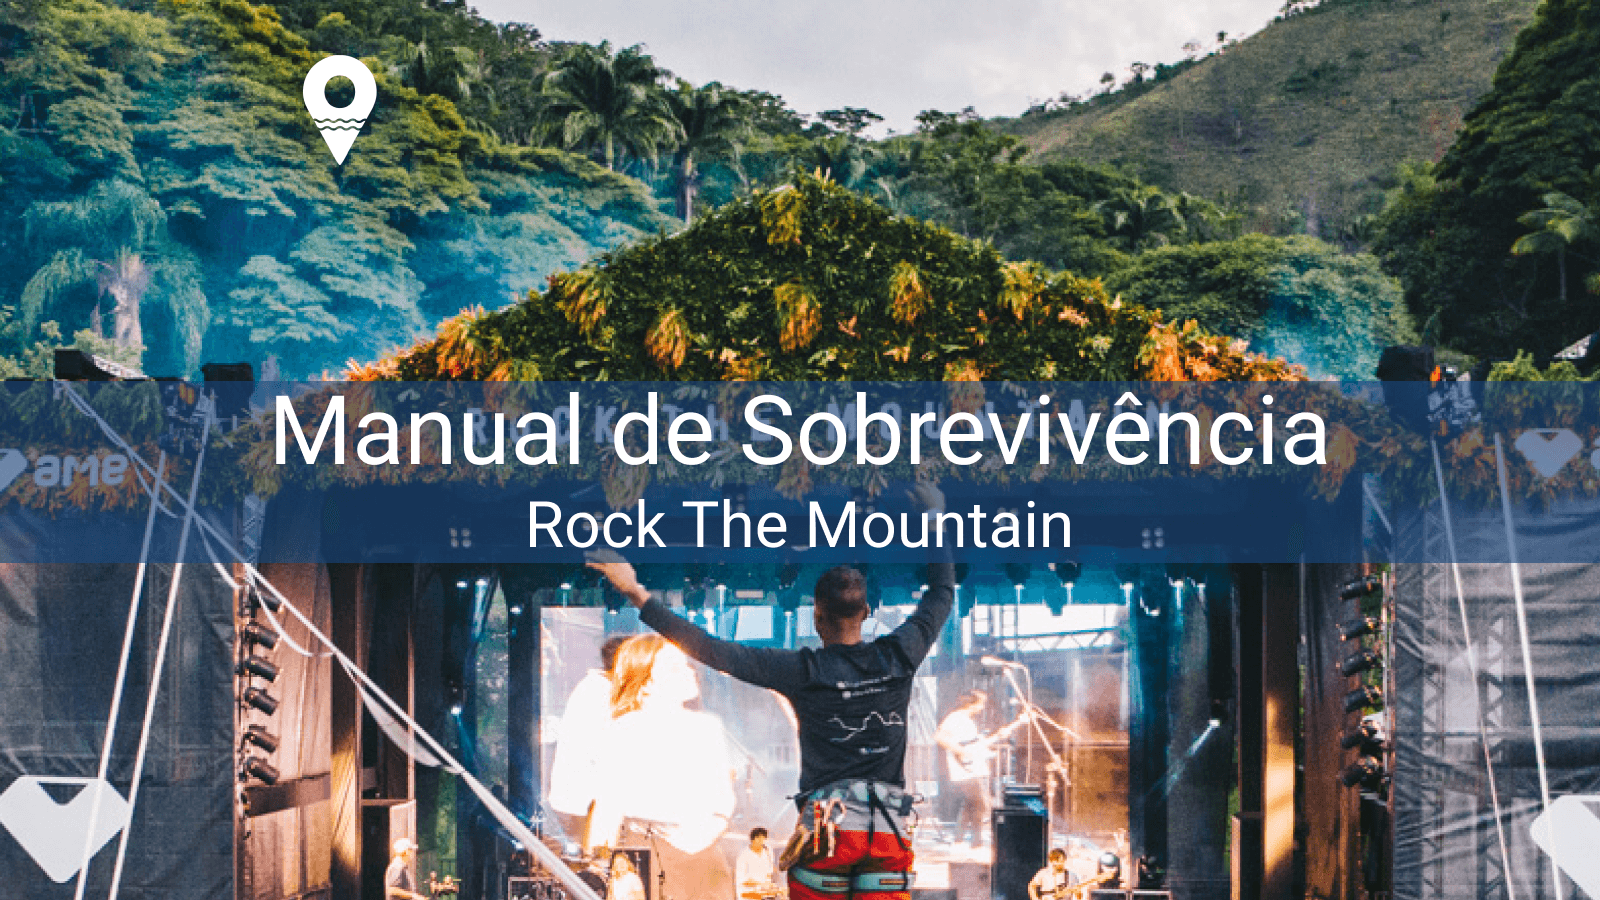 ¡Manual de supervivencia para Rock The Mountain!